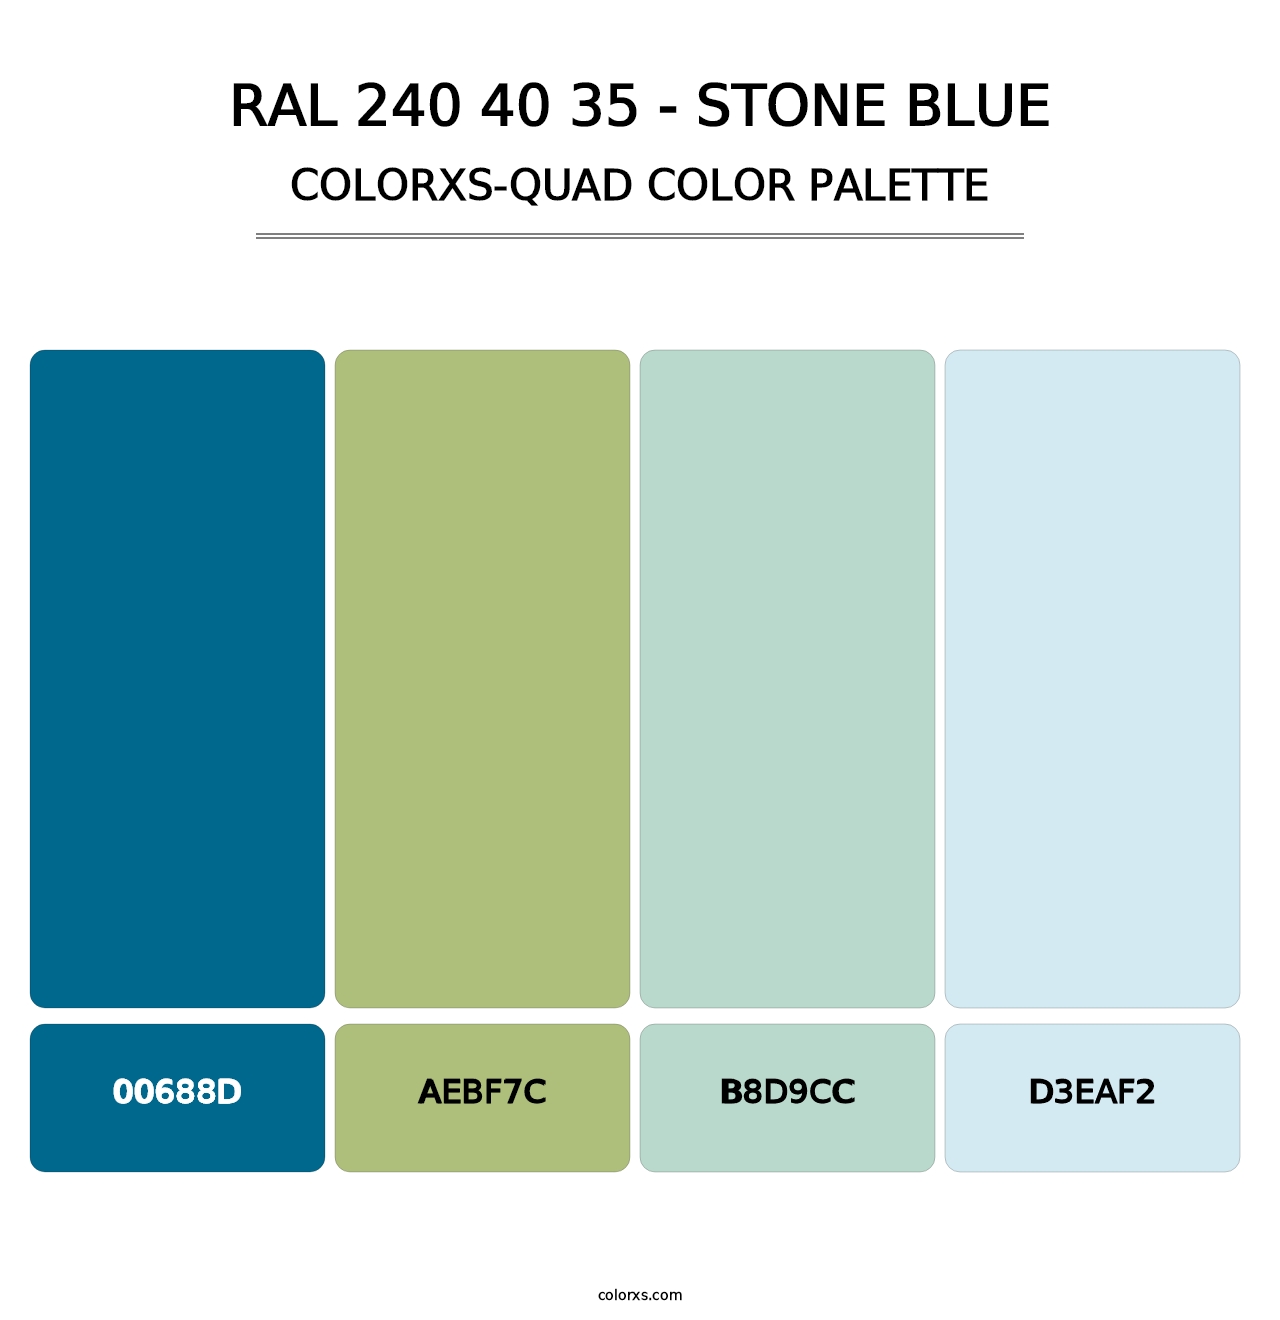 RAL 240 40 35 - Stone Blue - Colorxs Quad Palette